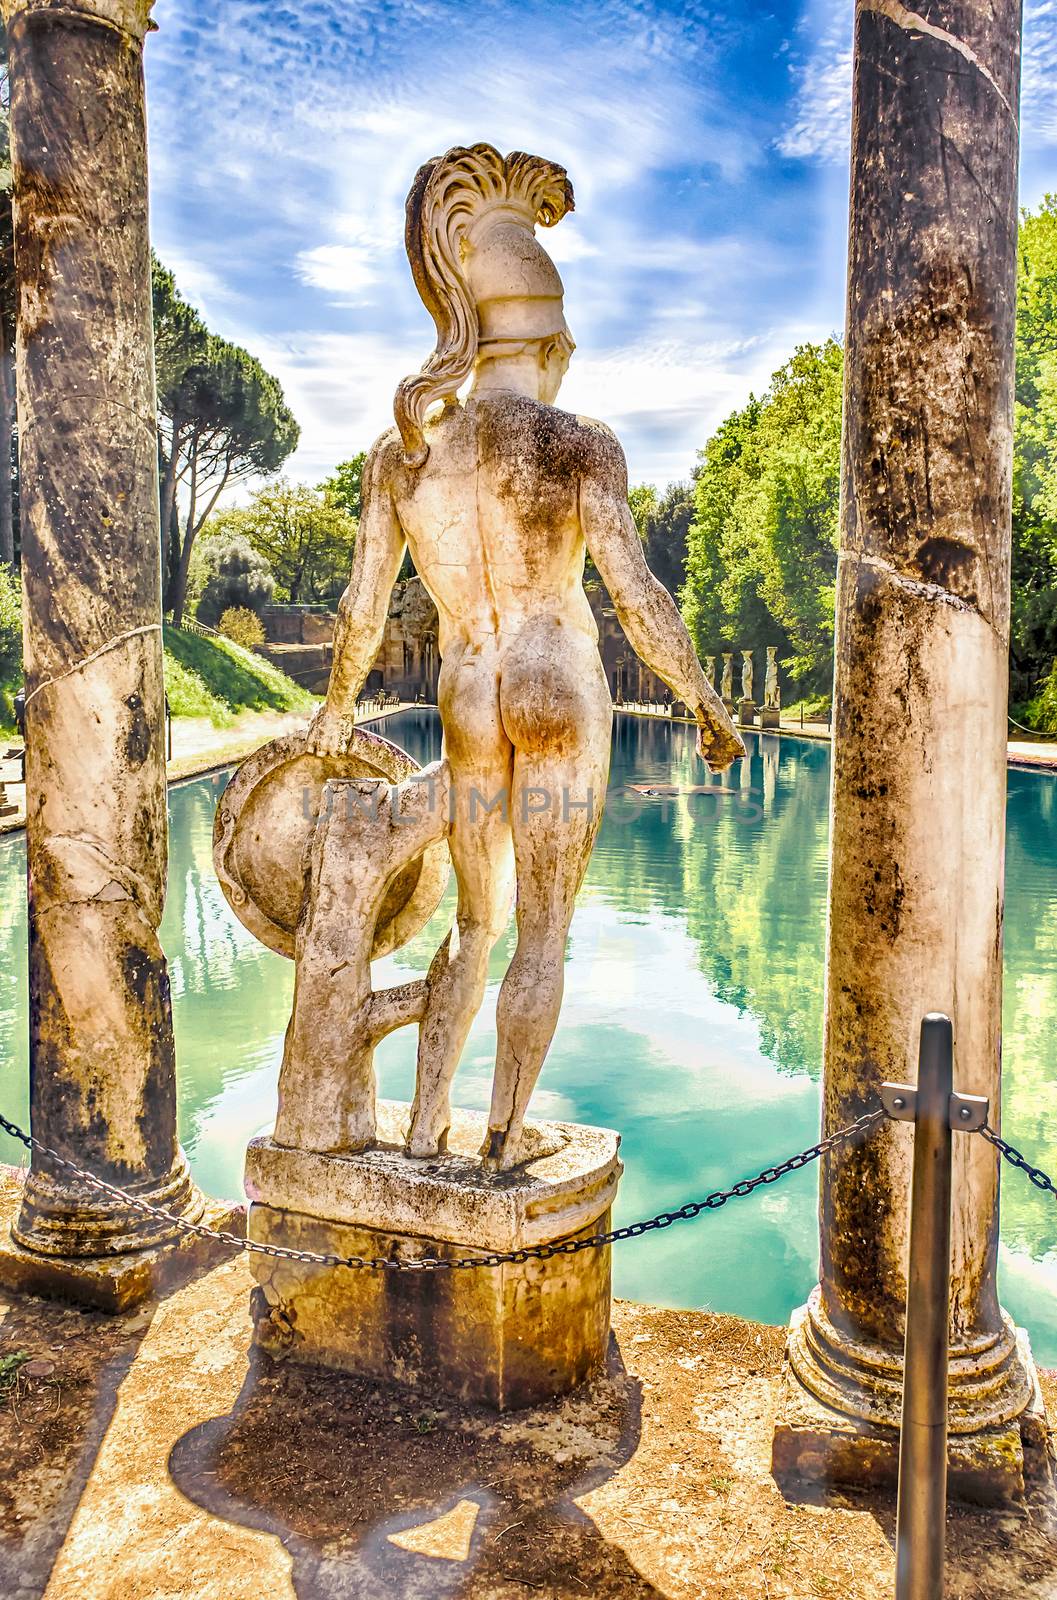 Greek Statue of Ares, inside Villa Adriana, Tivoli, Italy by marcorubino